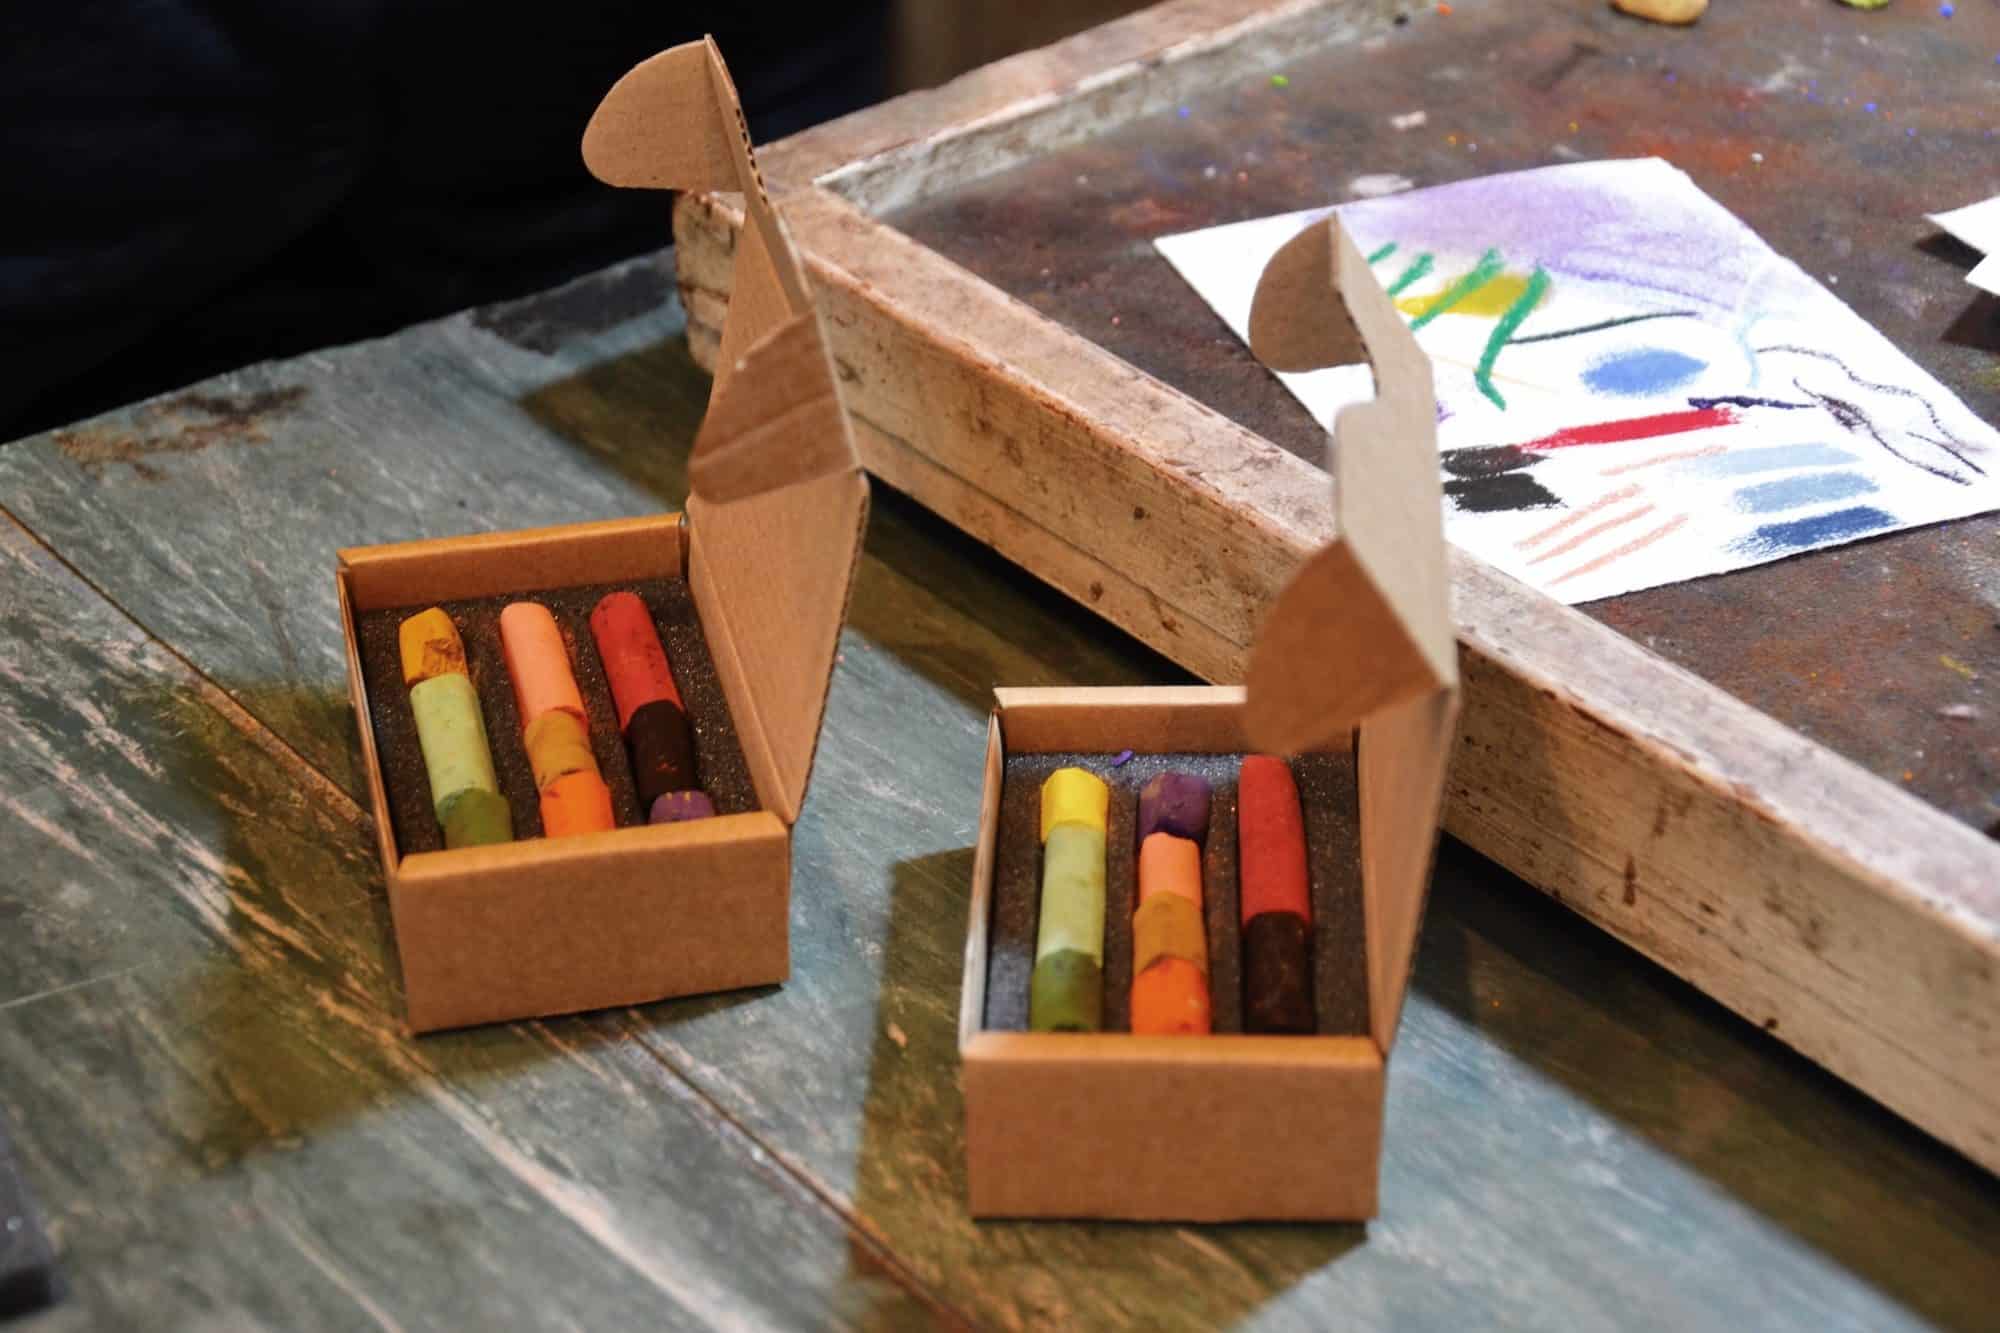 HiP Paris Blog explores the Maison du Pastel store in Paris, where Edgar Degas would buy his pastels, like these little boxes.